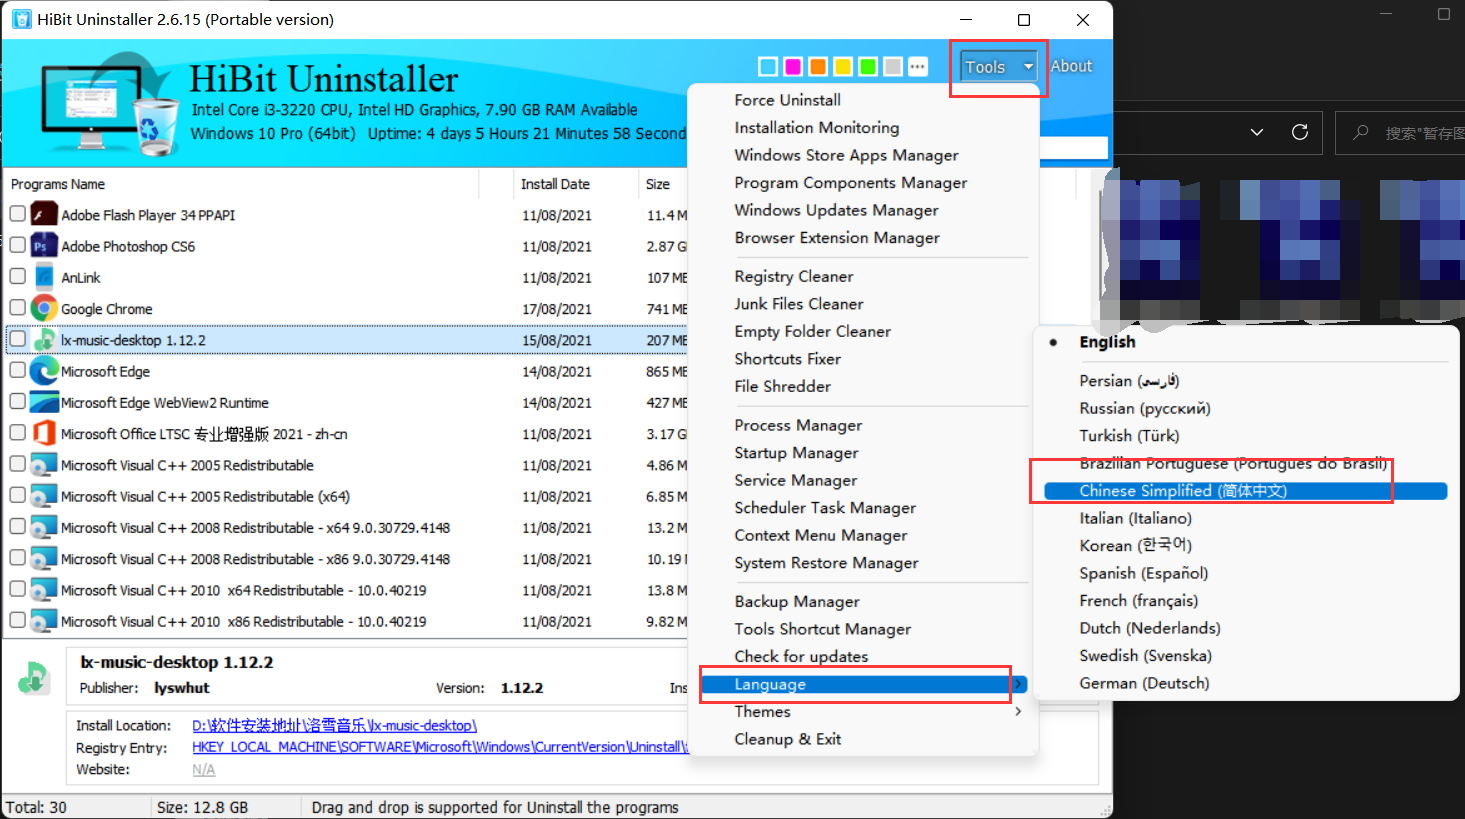 download the new version HiBit Uninstaller 3.1.62